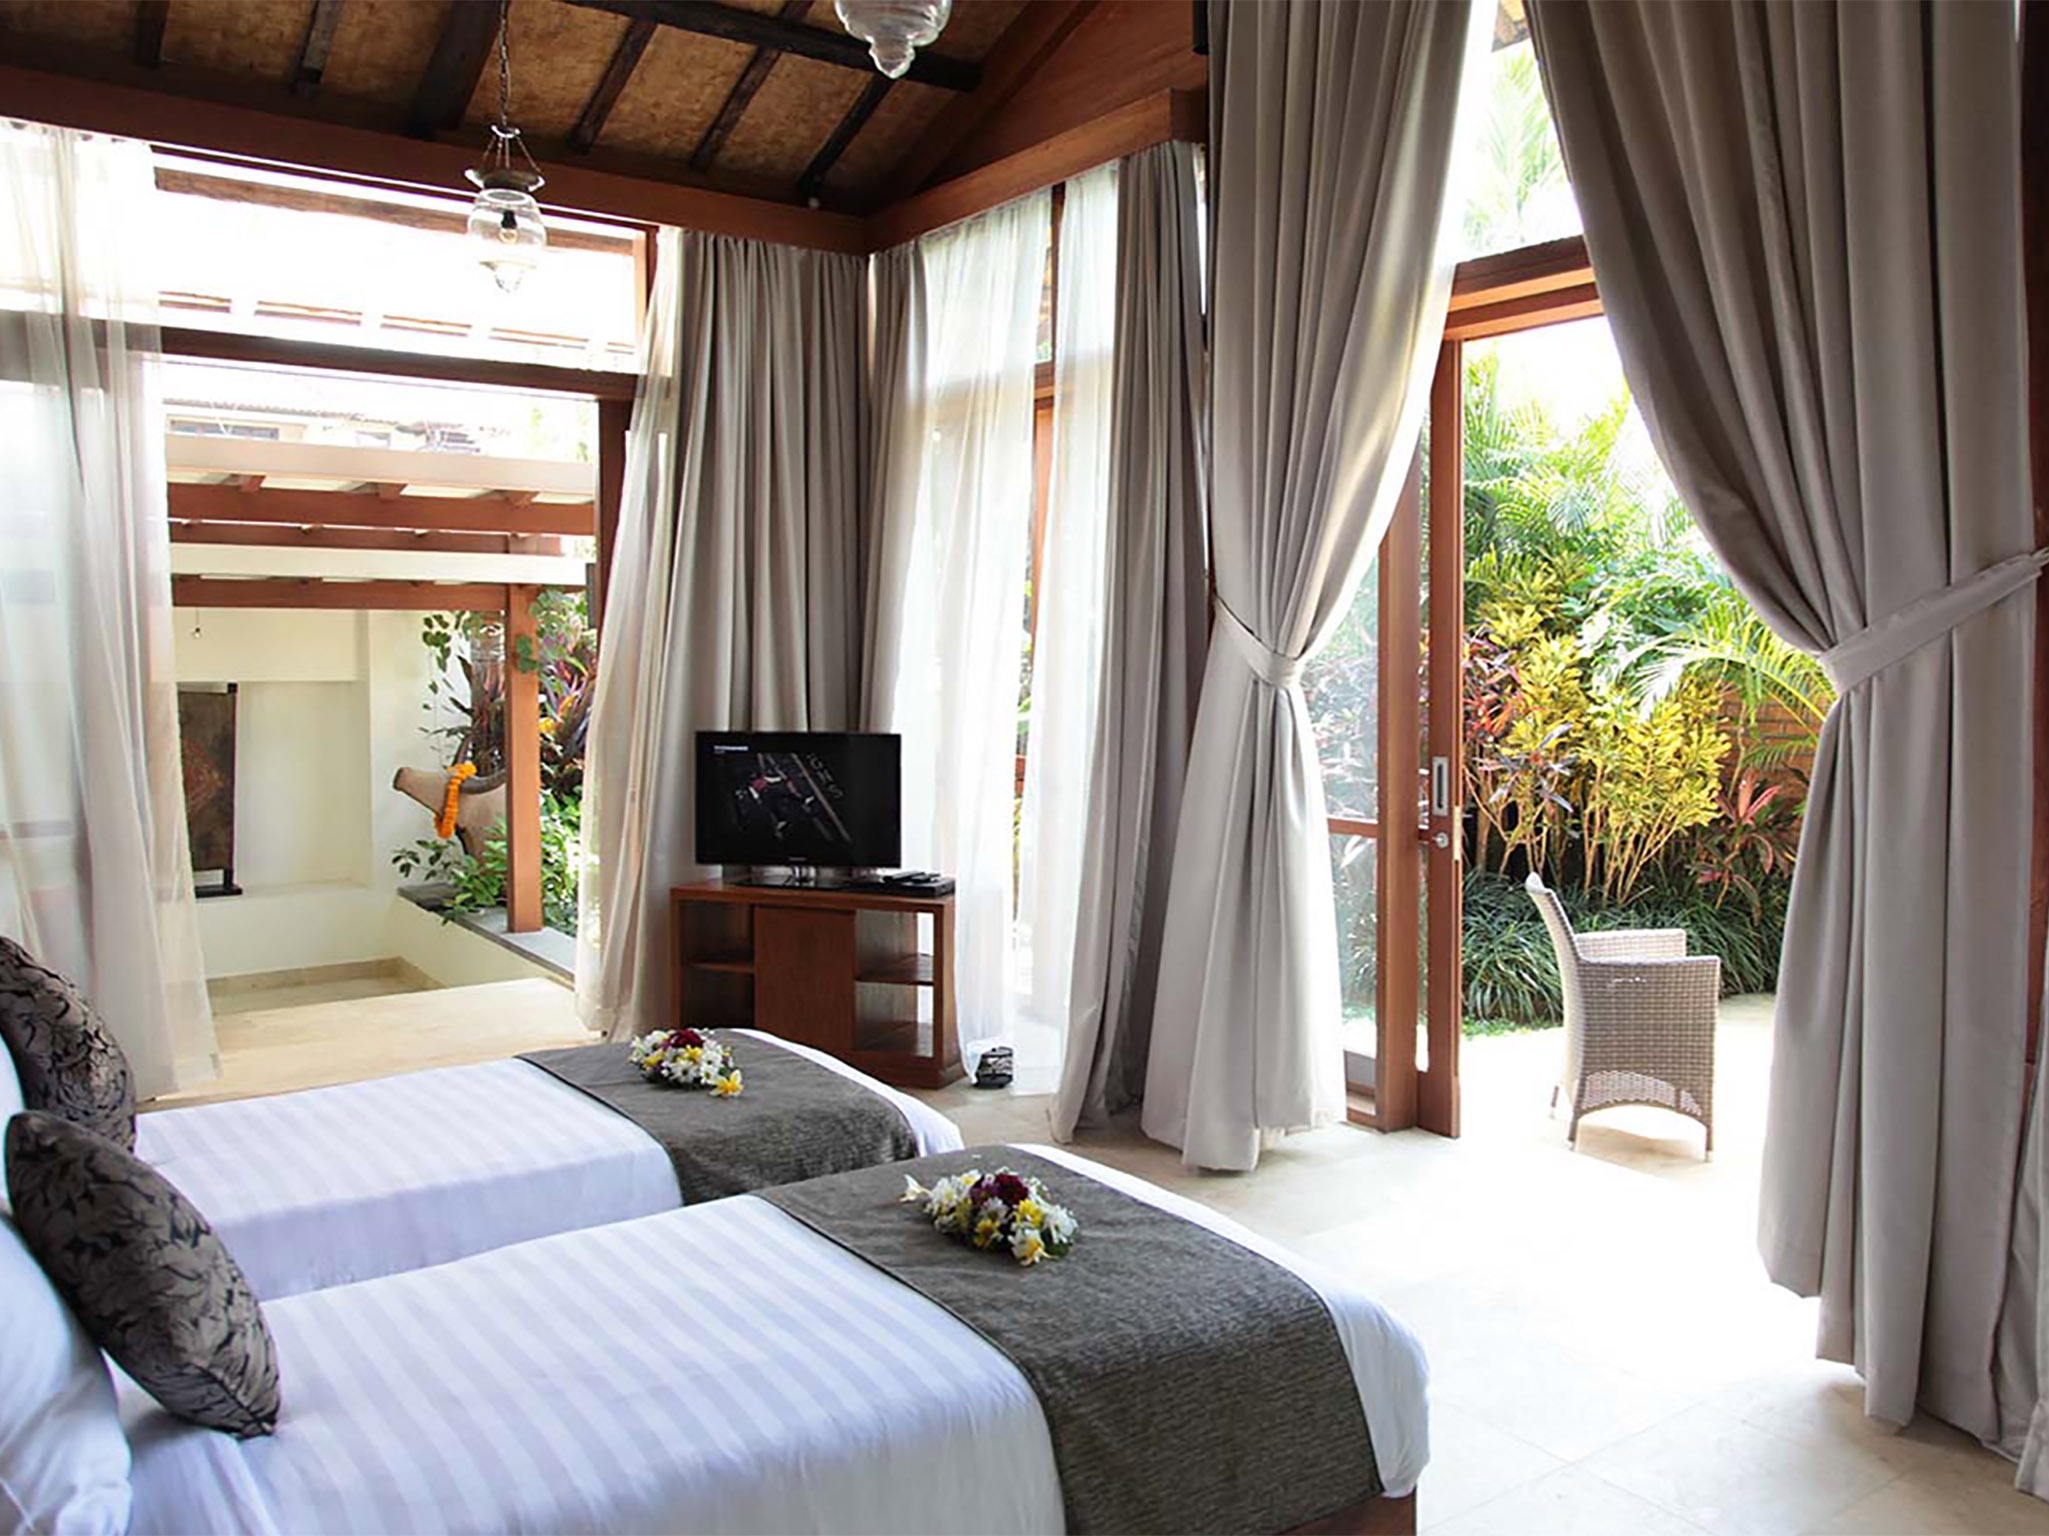 Villa Amy - Twin bedroom view - Dea Villas - Villa Amy, Canggu, Bali